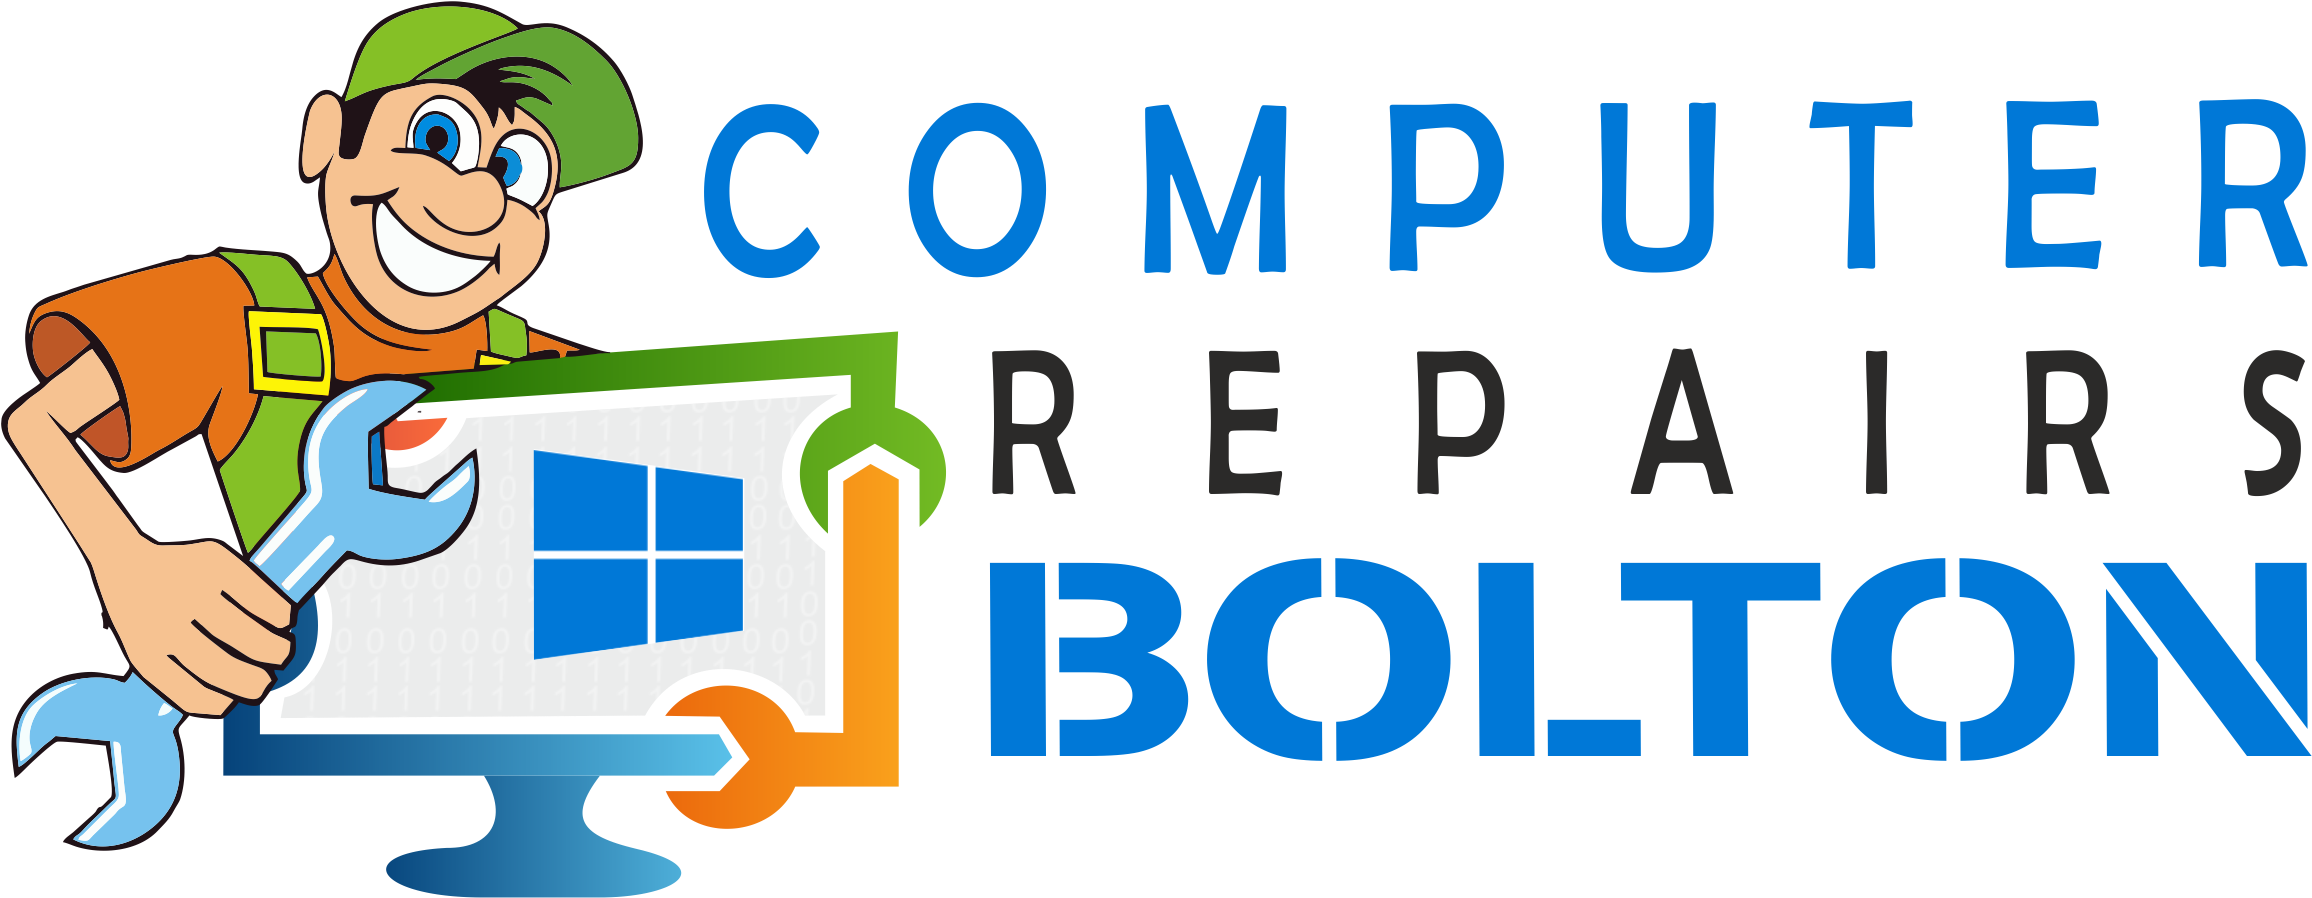 Logo-main - Computer Repair (2426x995)